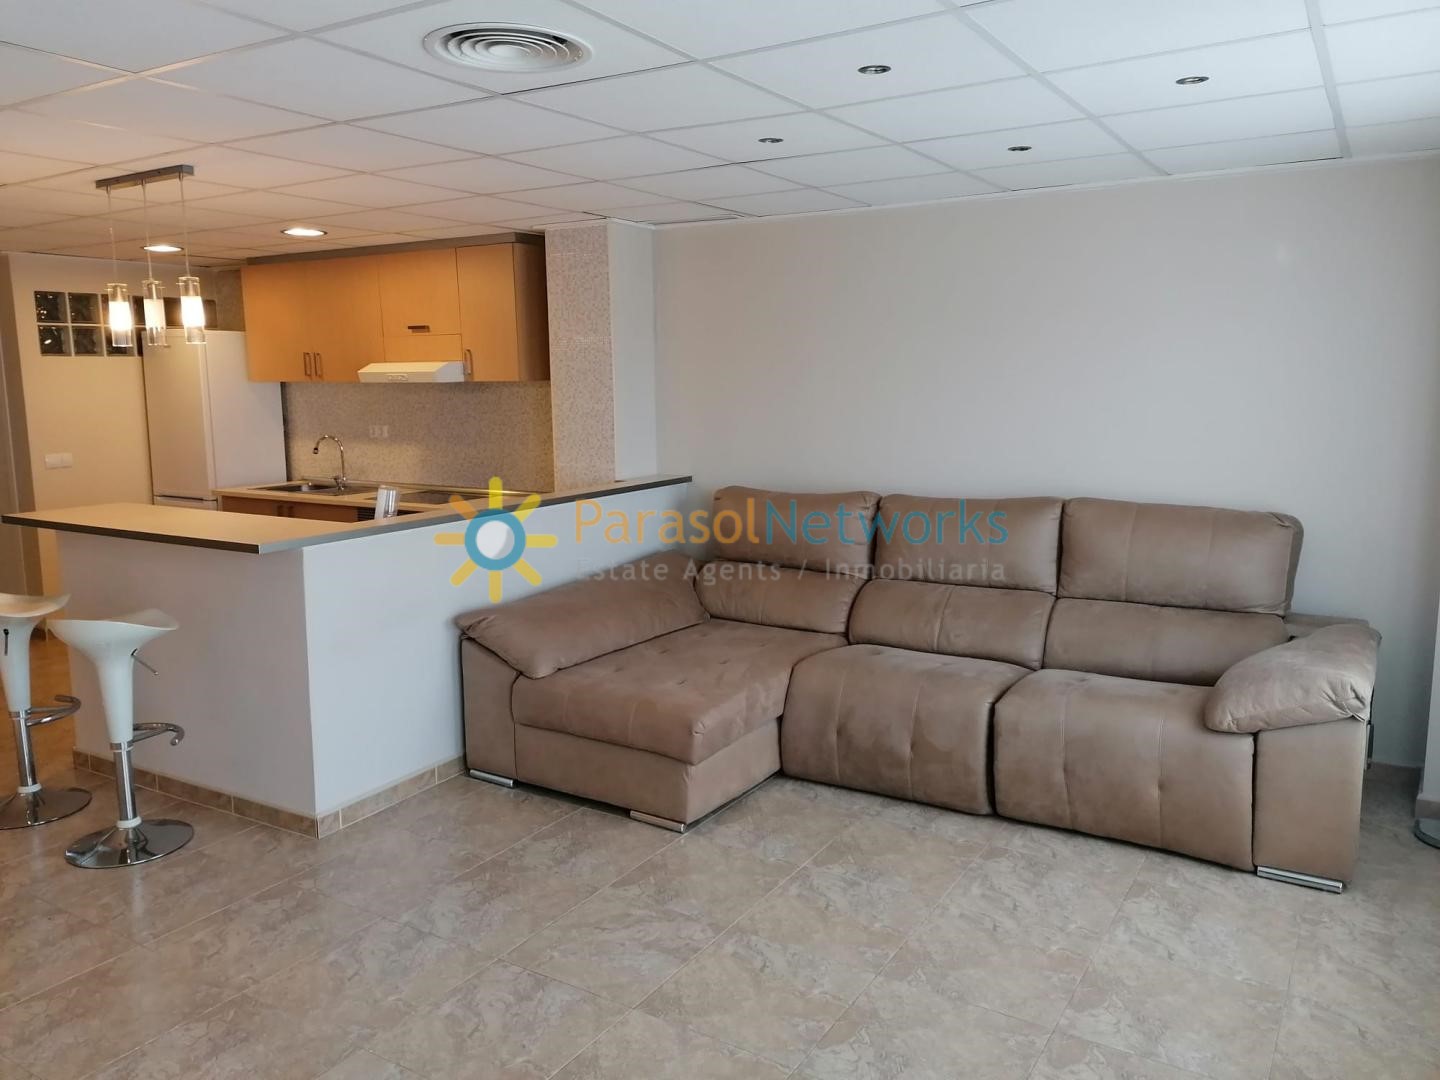 Apartment for rent in Oliva – Ref: 236